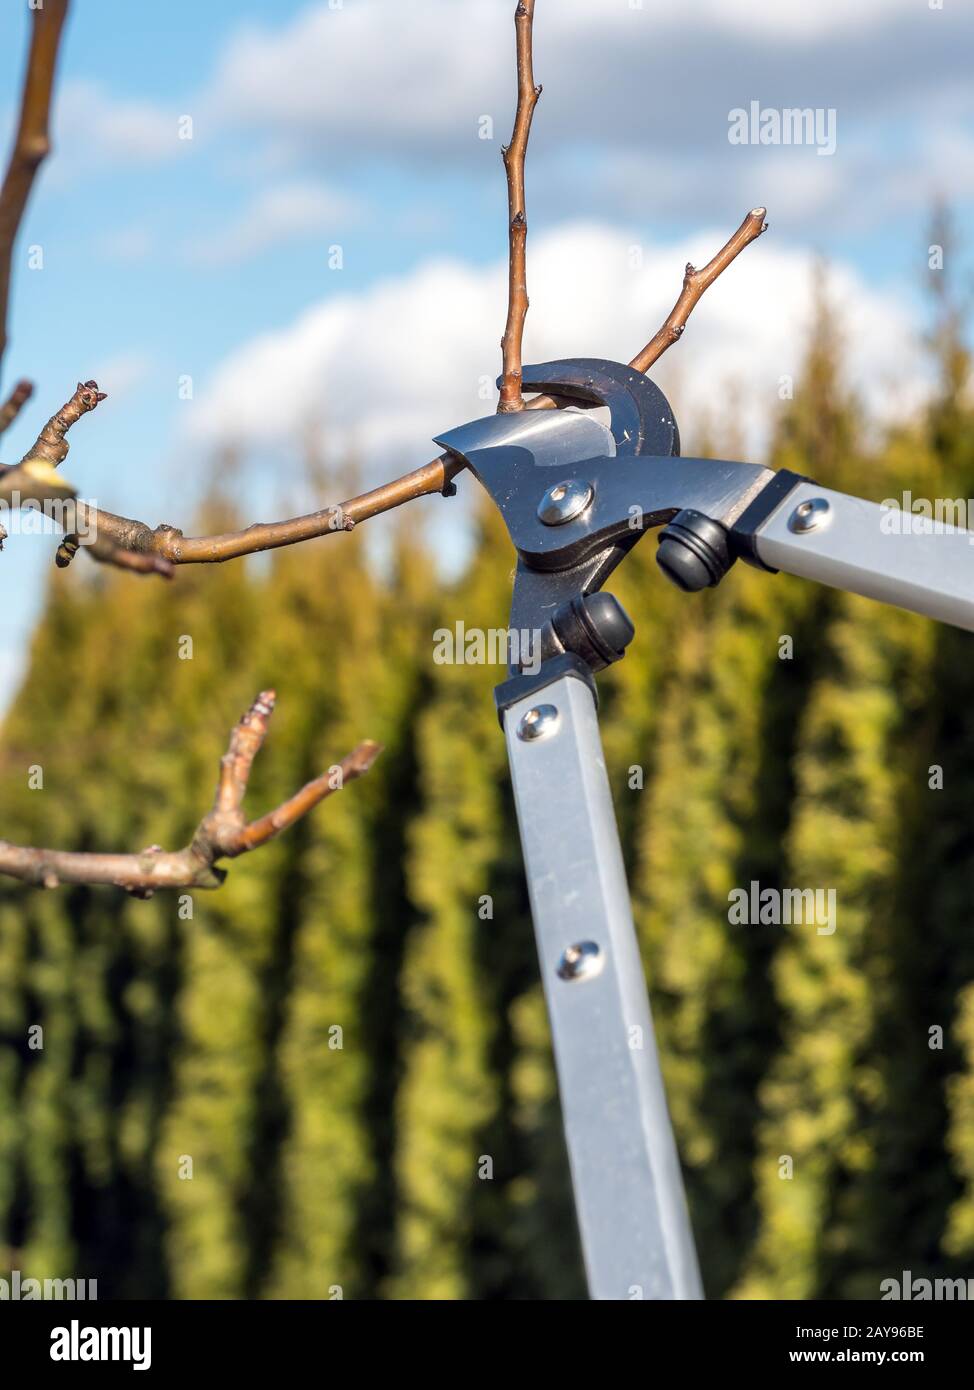 Schuss von Beschneiungsscheren, die von Gärtnern zum Beschneiden von Obstbaumzweigen verwendet werden Stockfoto